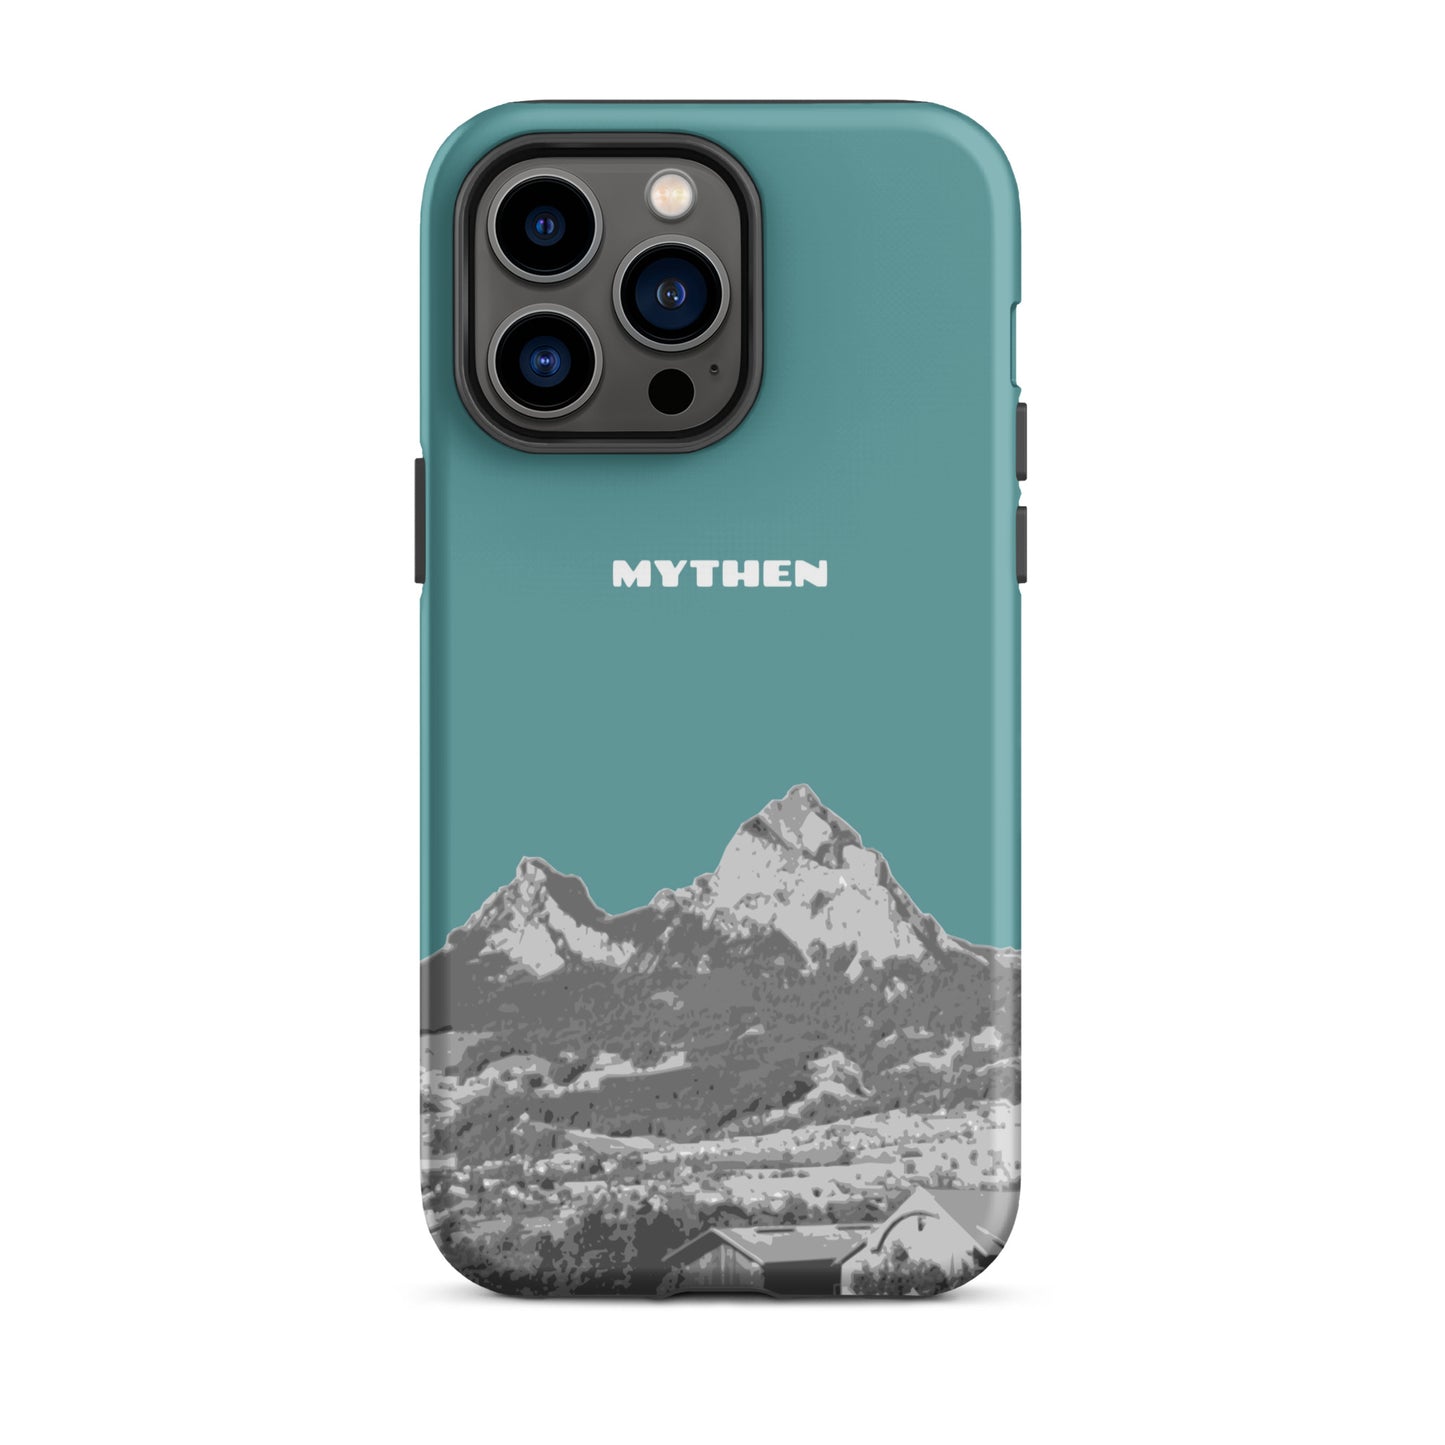 Hülle für das iPhone 14 Pro Max von Apple in der Farbe Kadettenblau, dass den Grossen Mythen und den Kleinen Mythen bei Schwyz zeigt. 